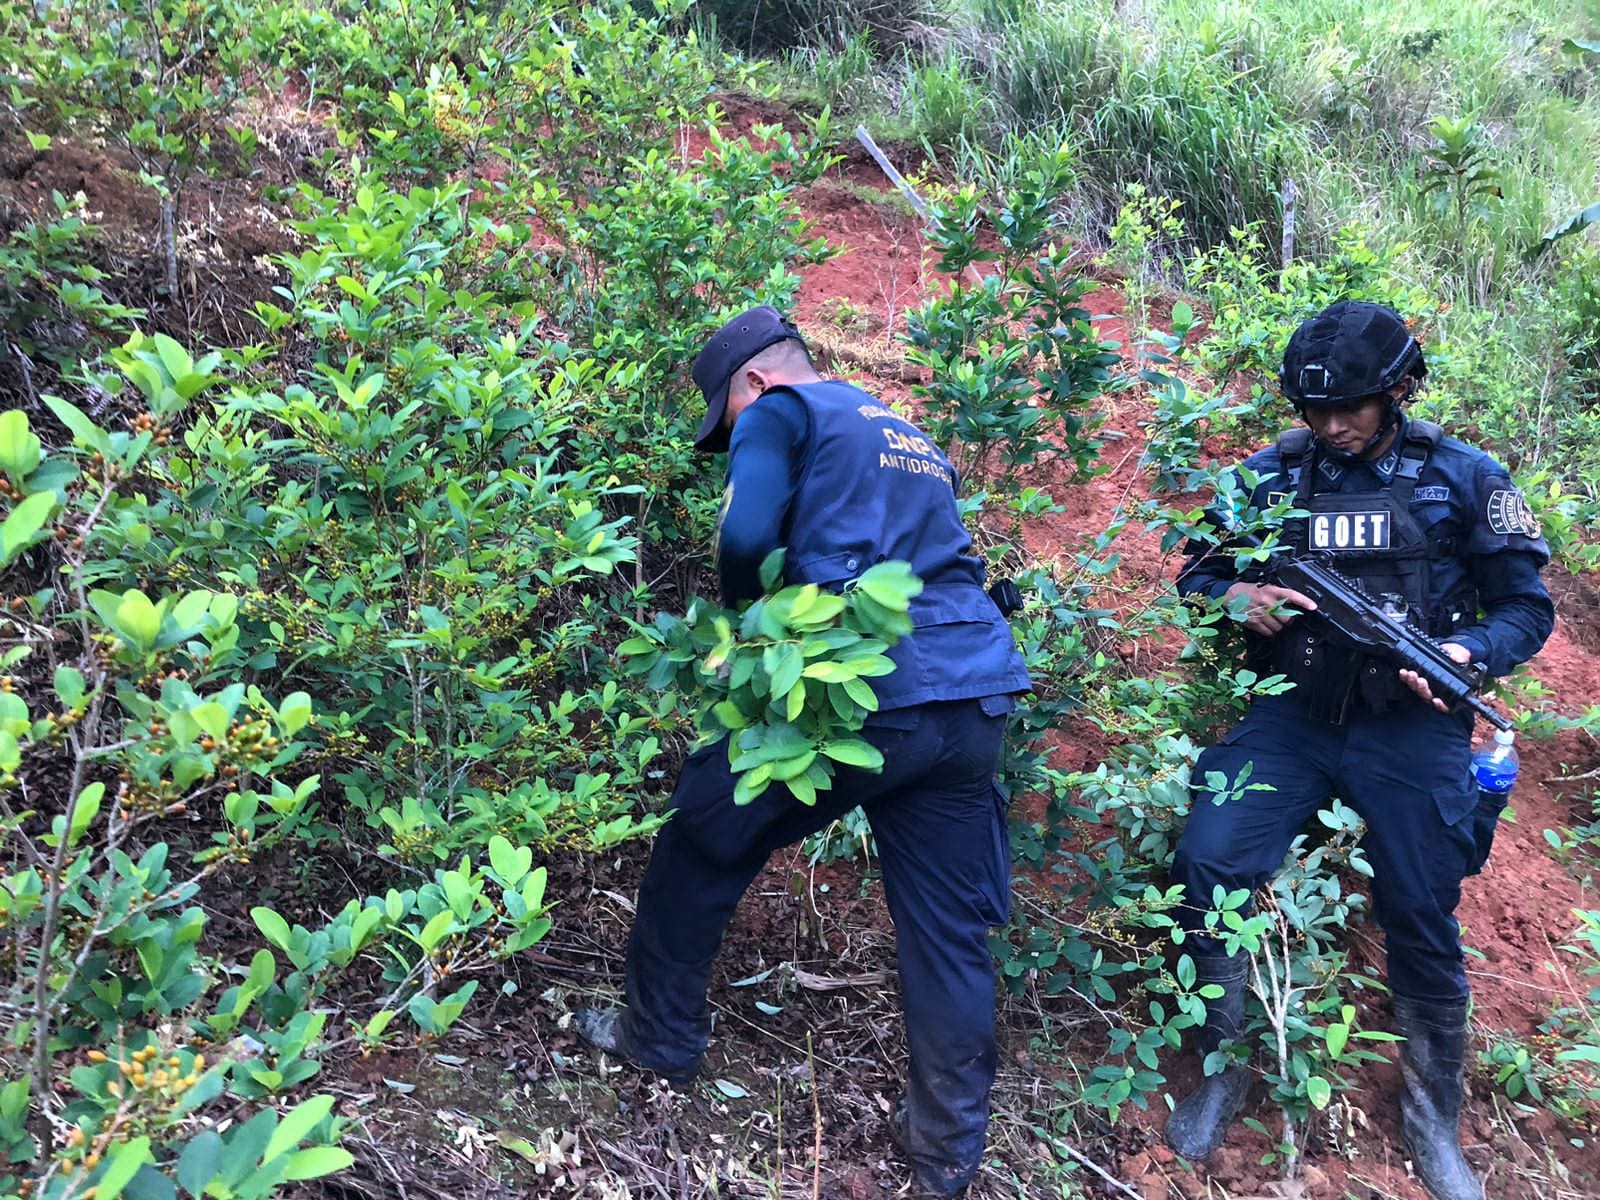 Cultivos ilícitos: Policía antidrogas ubica y asegura 40,000 arbustos de supuesta hoja de coca y un laboratorio rústico en Colón